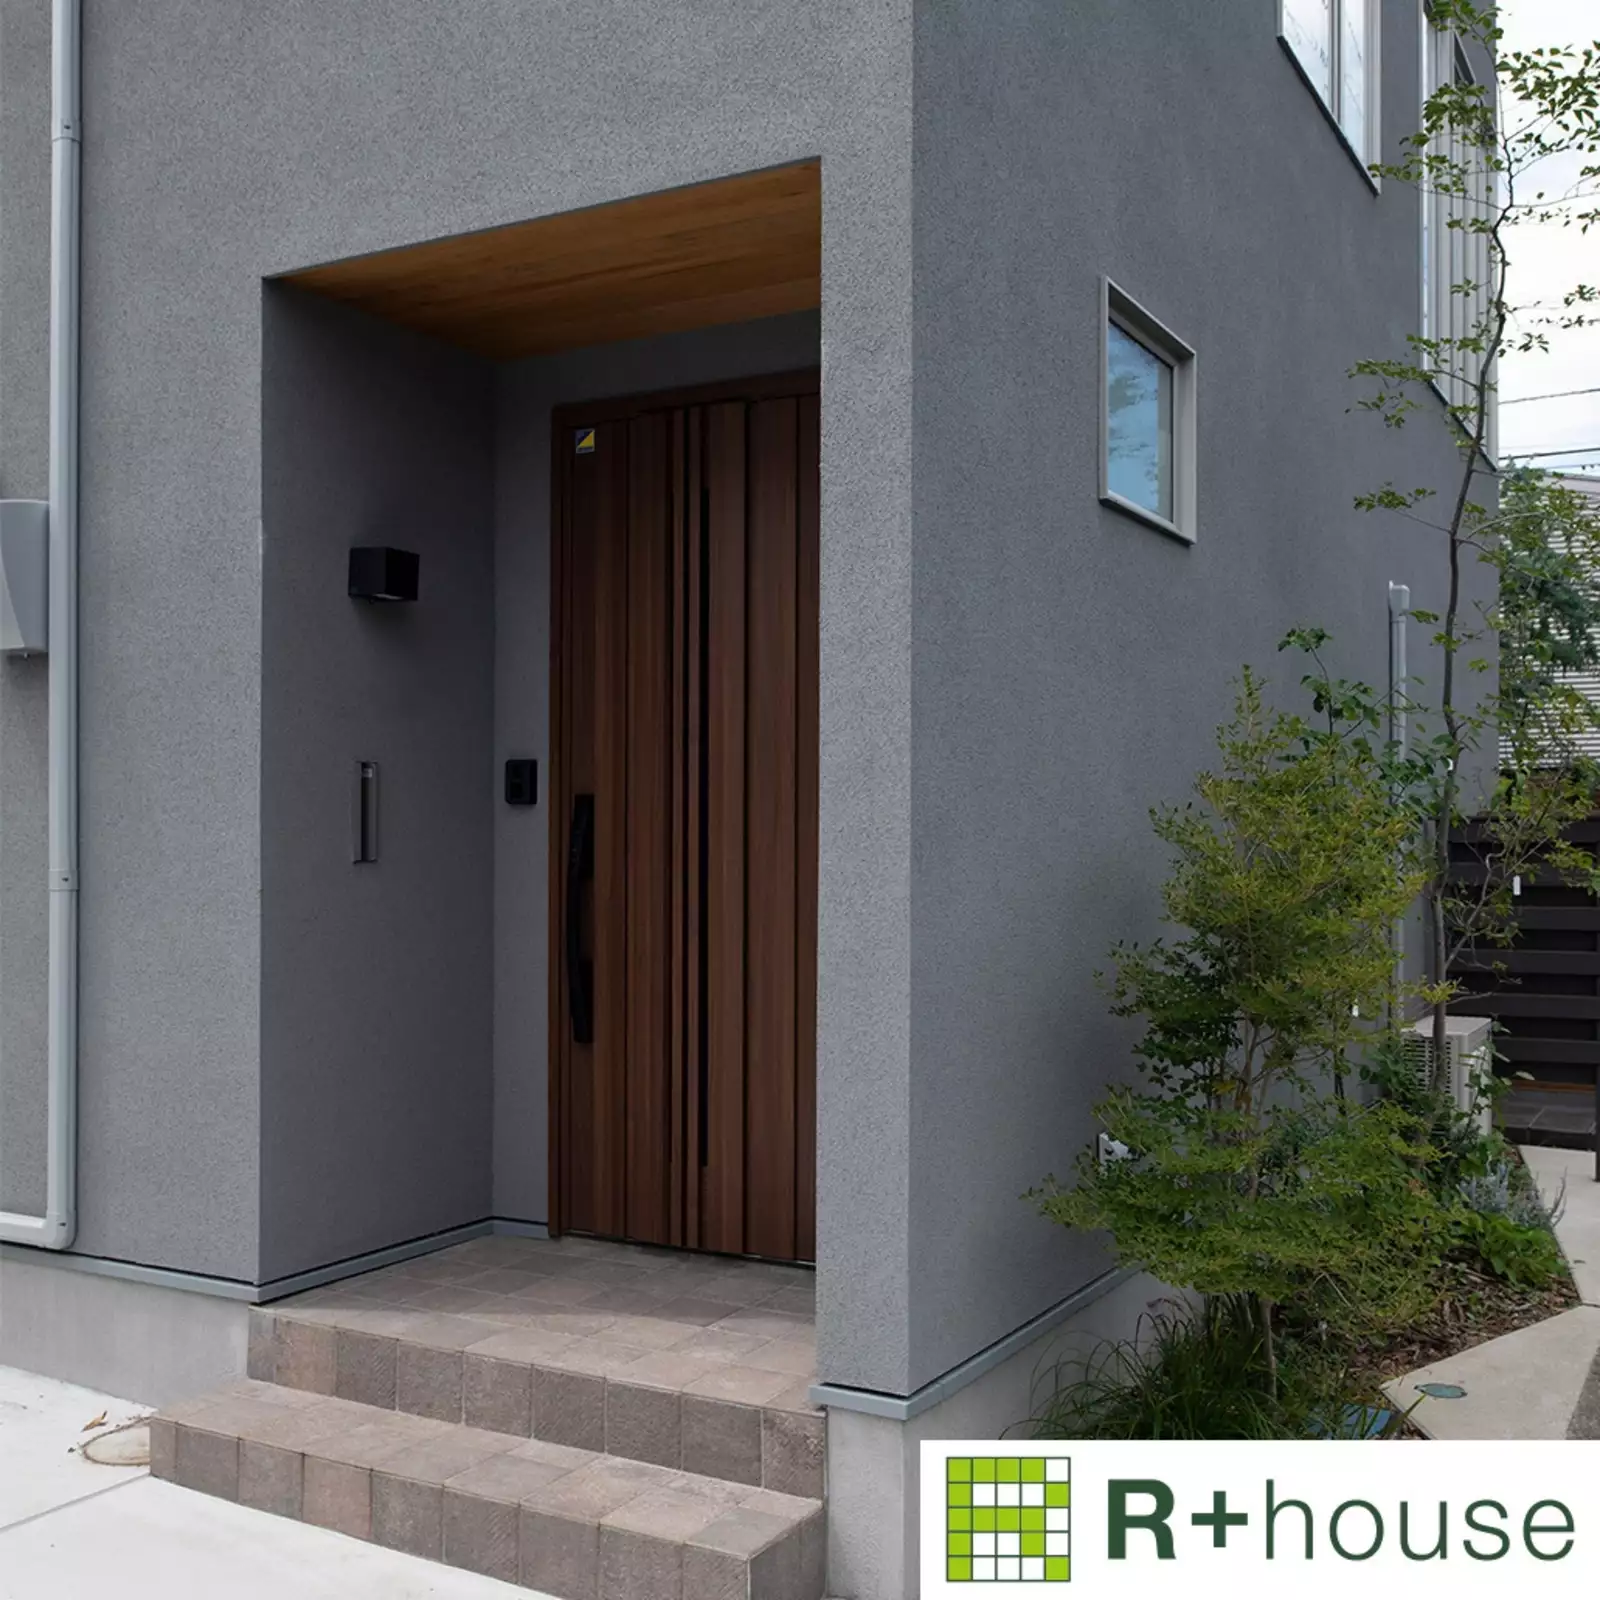 R+houseの物件の玄関の写真です。壁はグレー、濃いブラウンのおしゃれなドア。天井は木目調の明るいブラウン